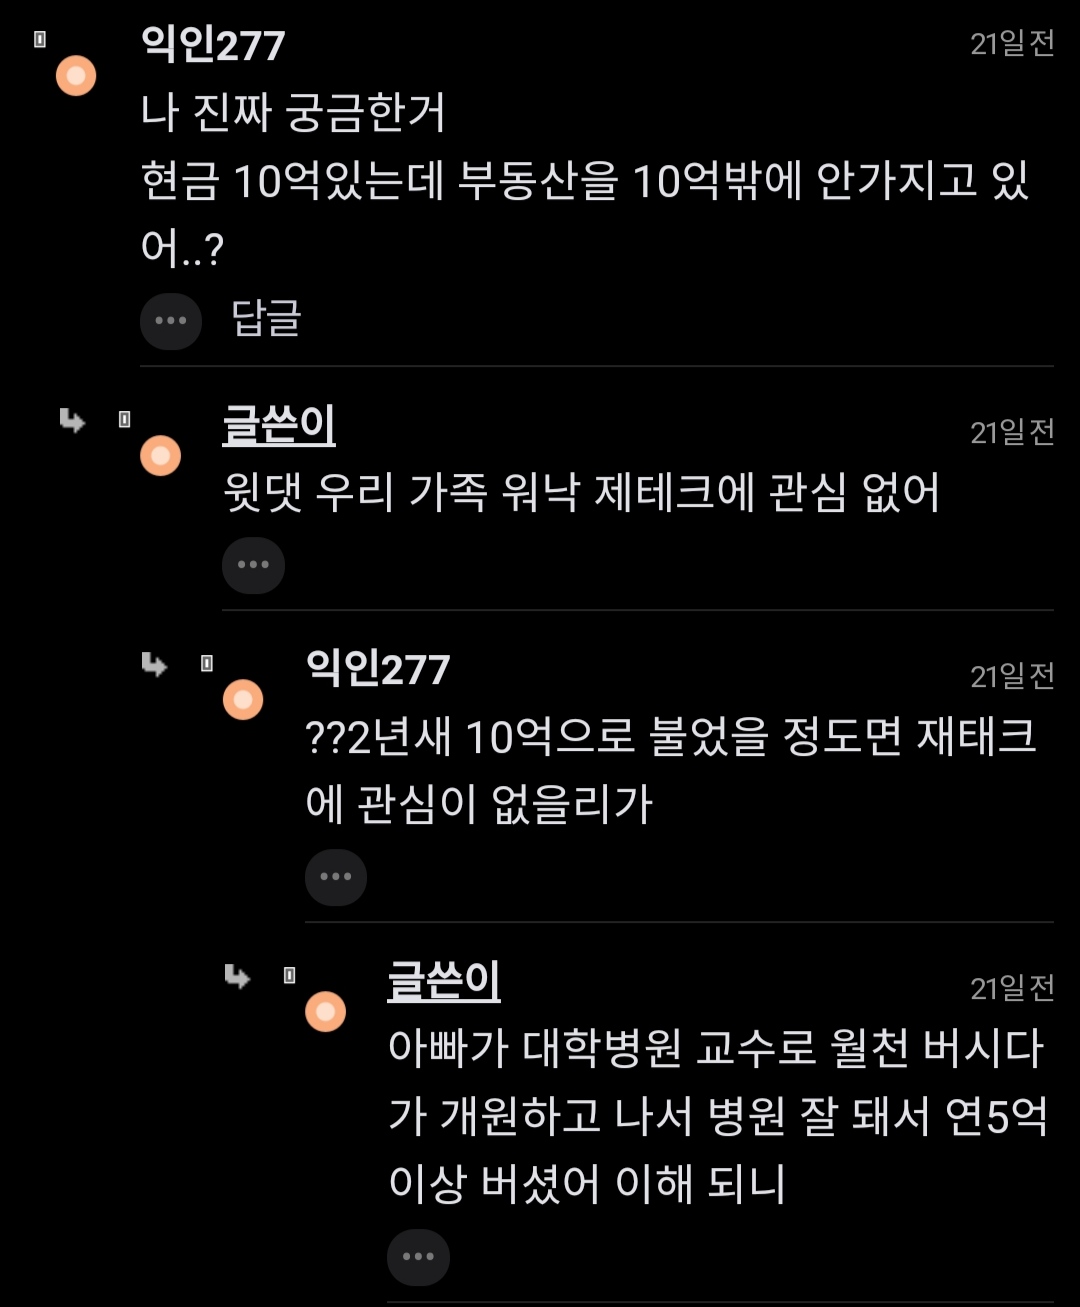 ""현금 10억원도 중산층인건 팩트아님?"".jpg